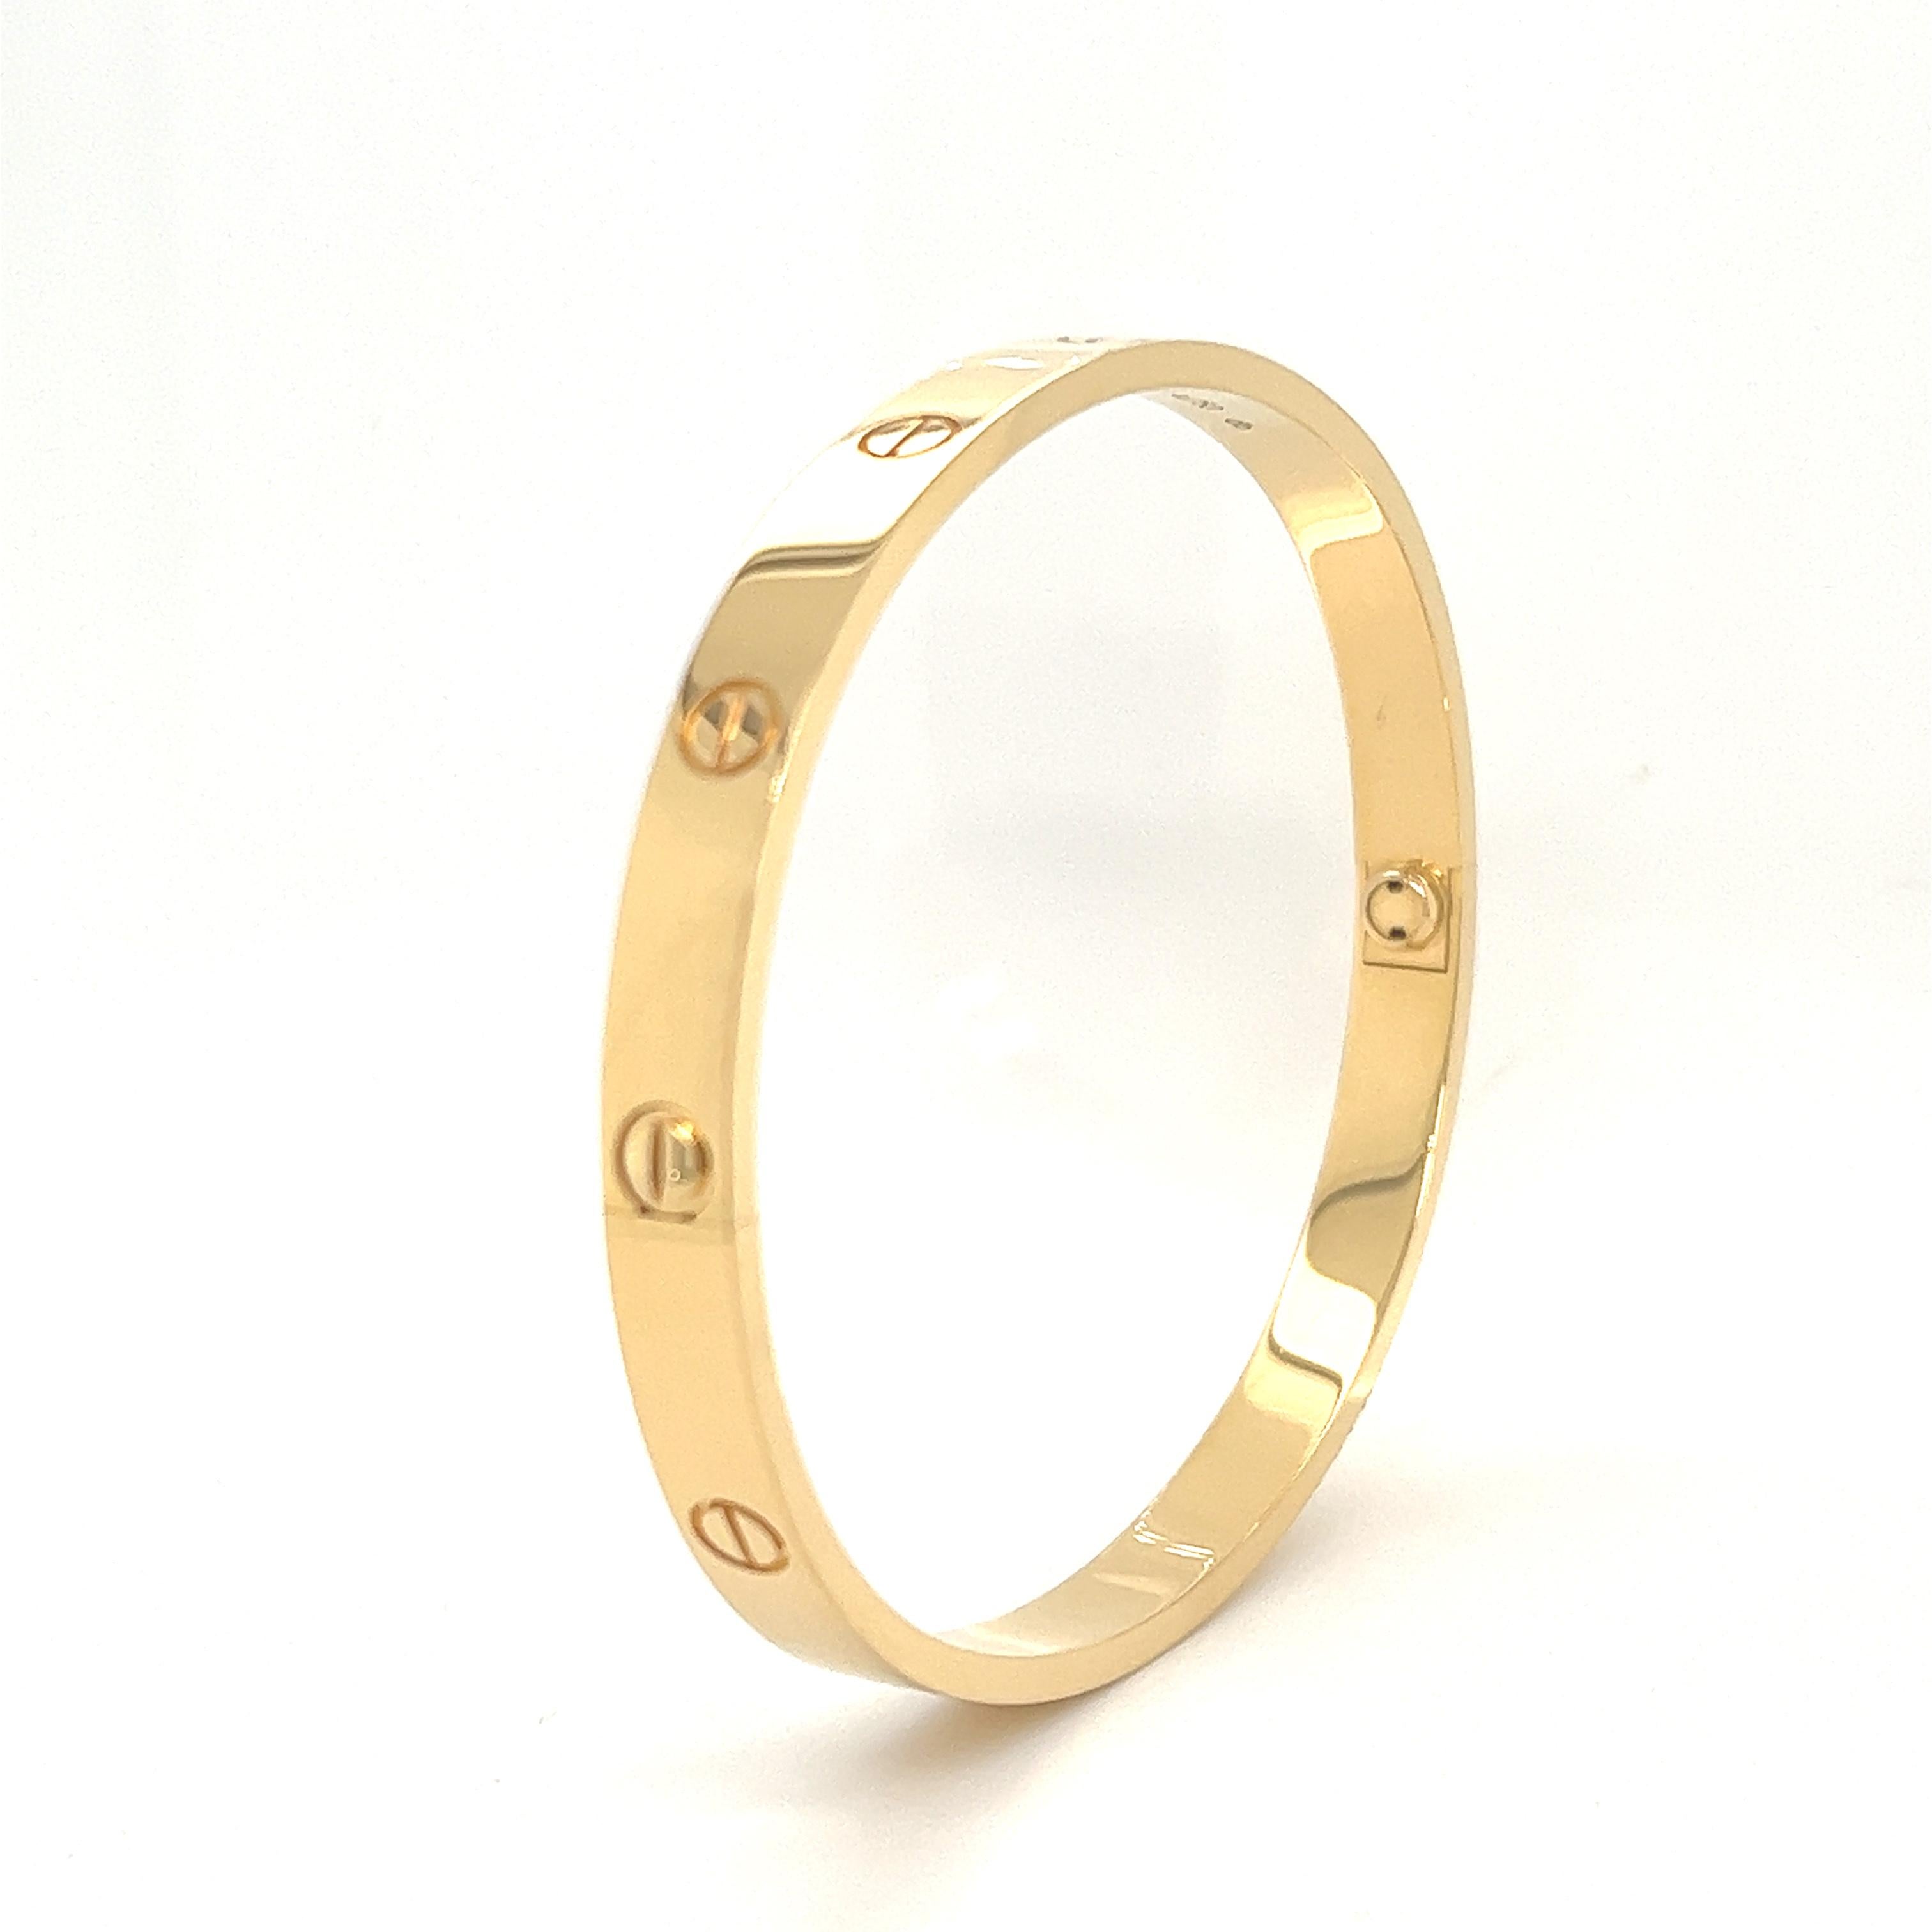 Un bracelet signature de Cartier en or jaune 18 carats de la collection Love. Le bracelet est de taille 20 et pèse 39,6 grammes. La boîte d'origine de Cartier, la clé et les documents sont inclus dans l'achat. Ce bracelet est en parfait état, les